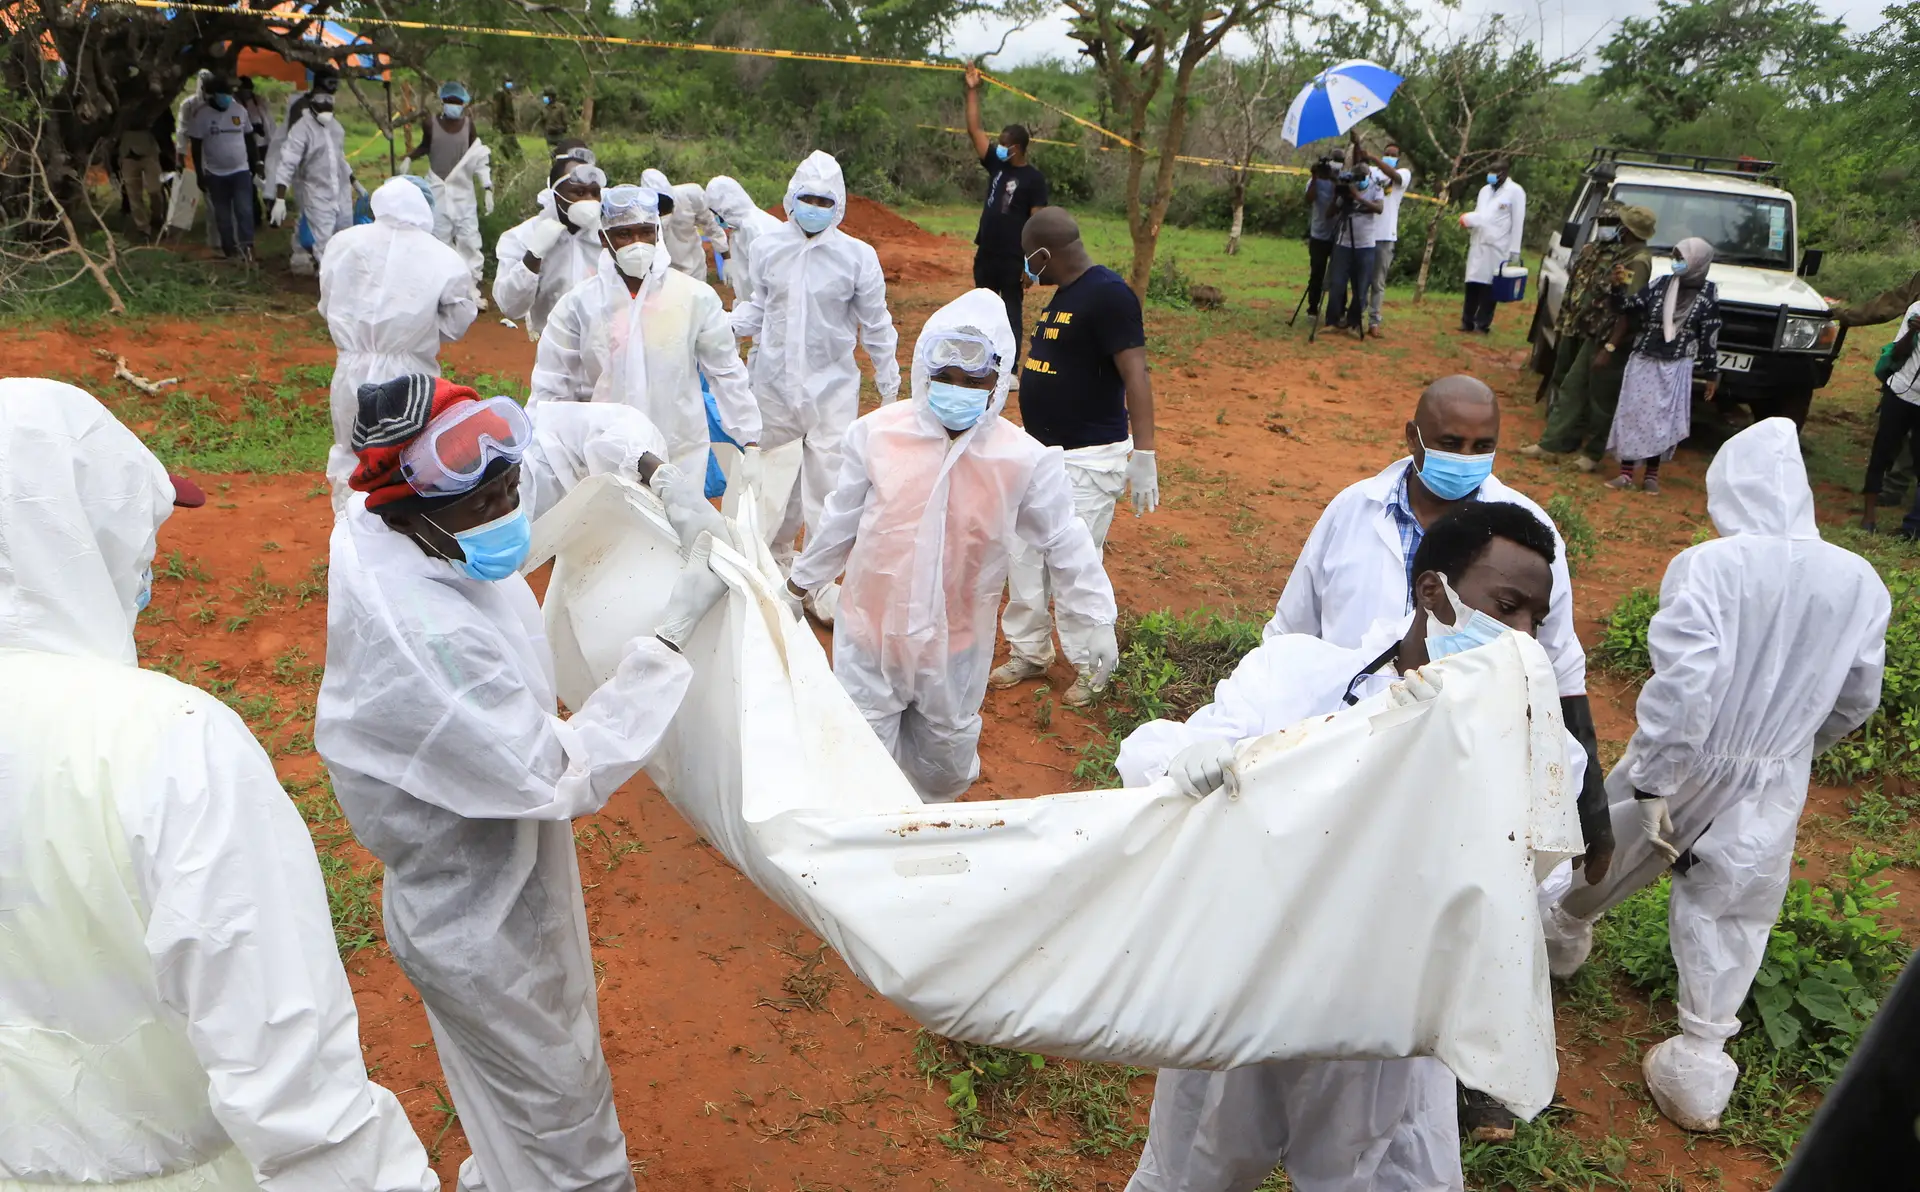 Descobertos até agora 21 corpos de pessoas que terão morrido de fome após jejum numa seita no Quénia